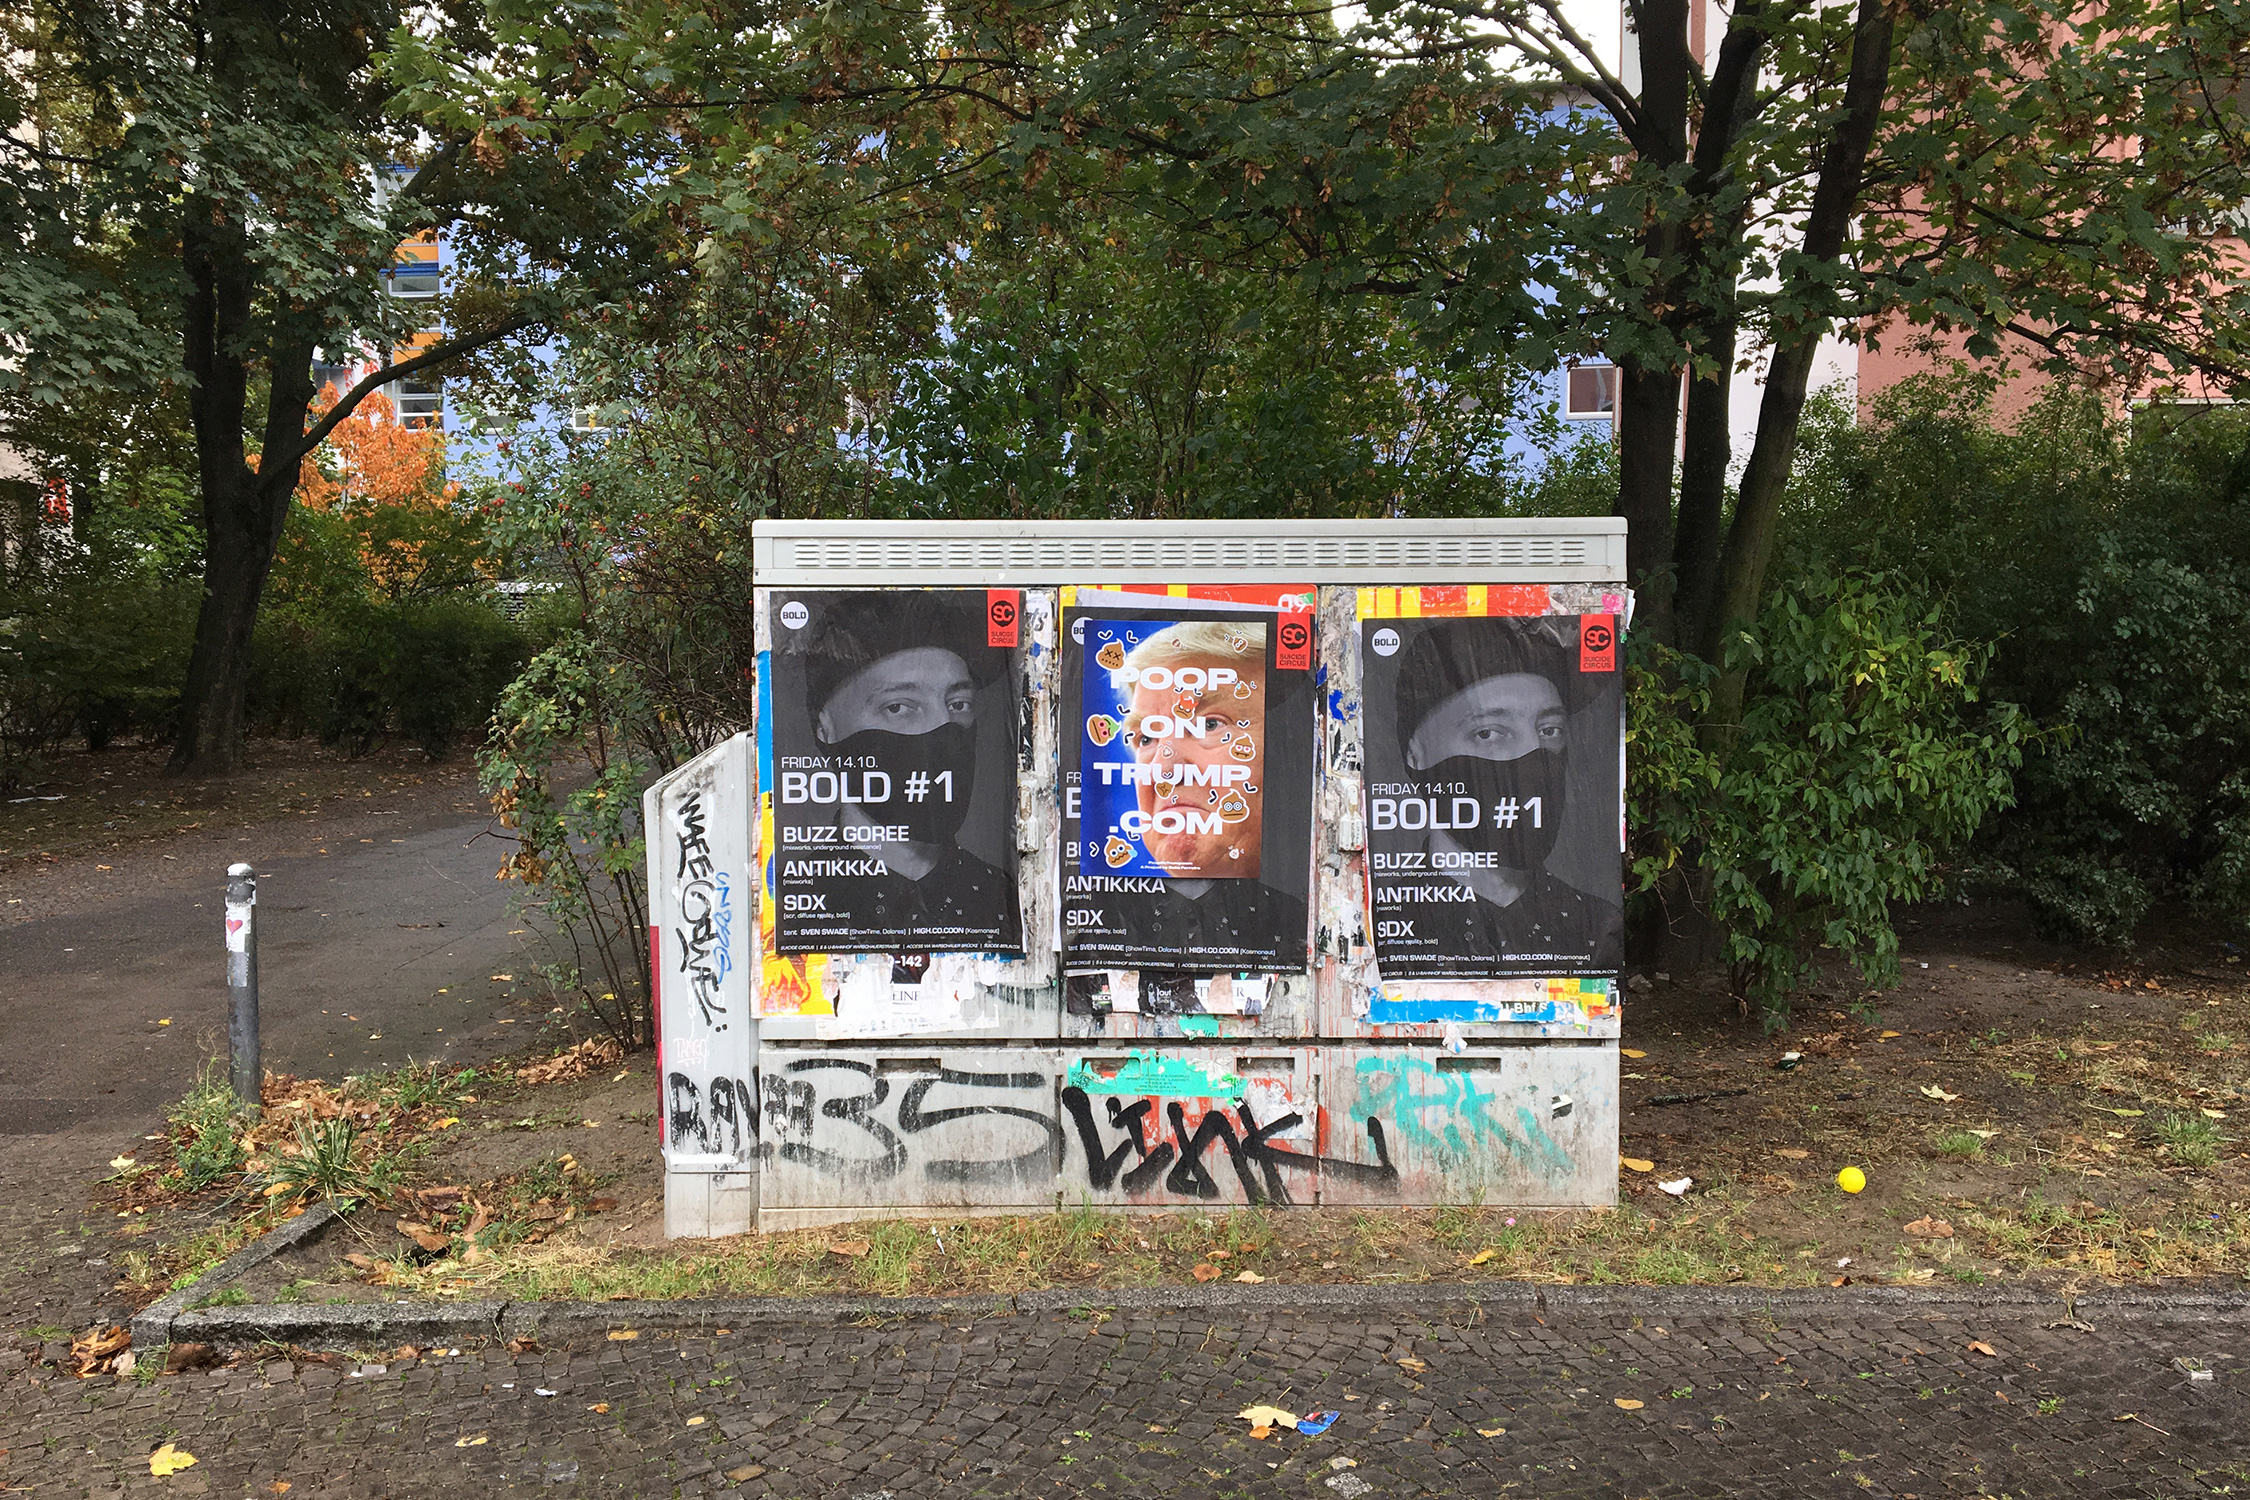 Gabe Ferreira: Poop on Trump — Poster in Berlin (2).